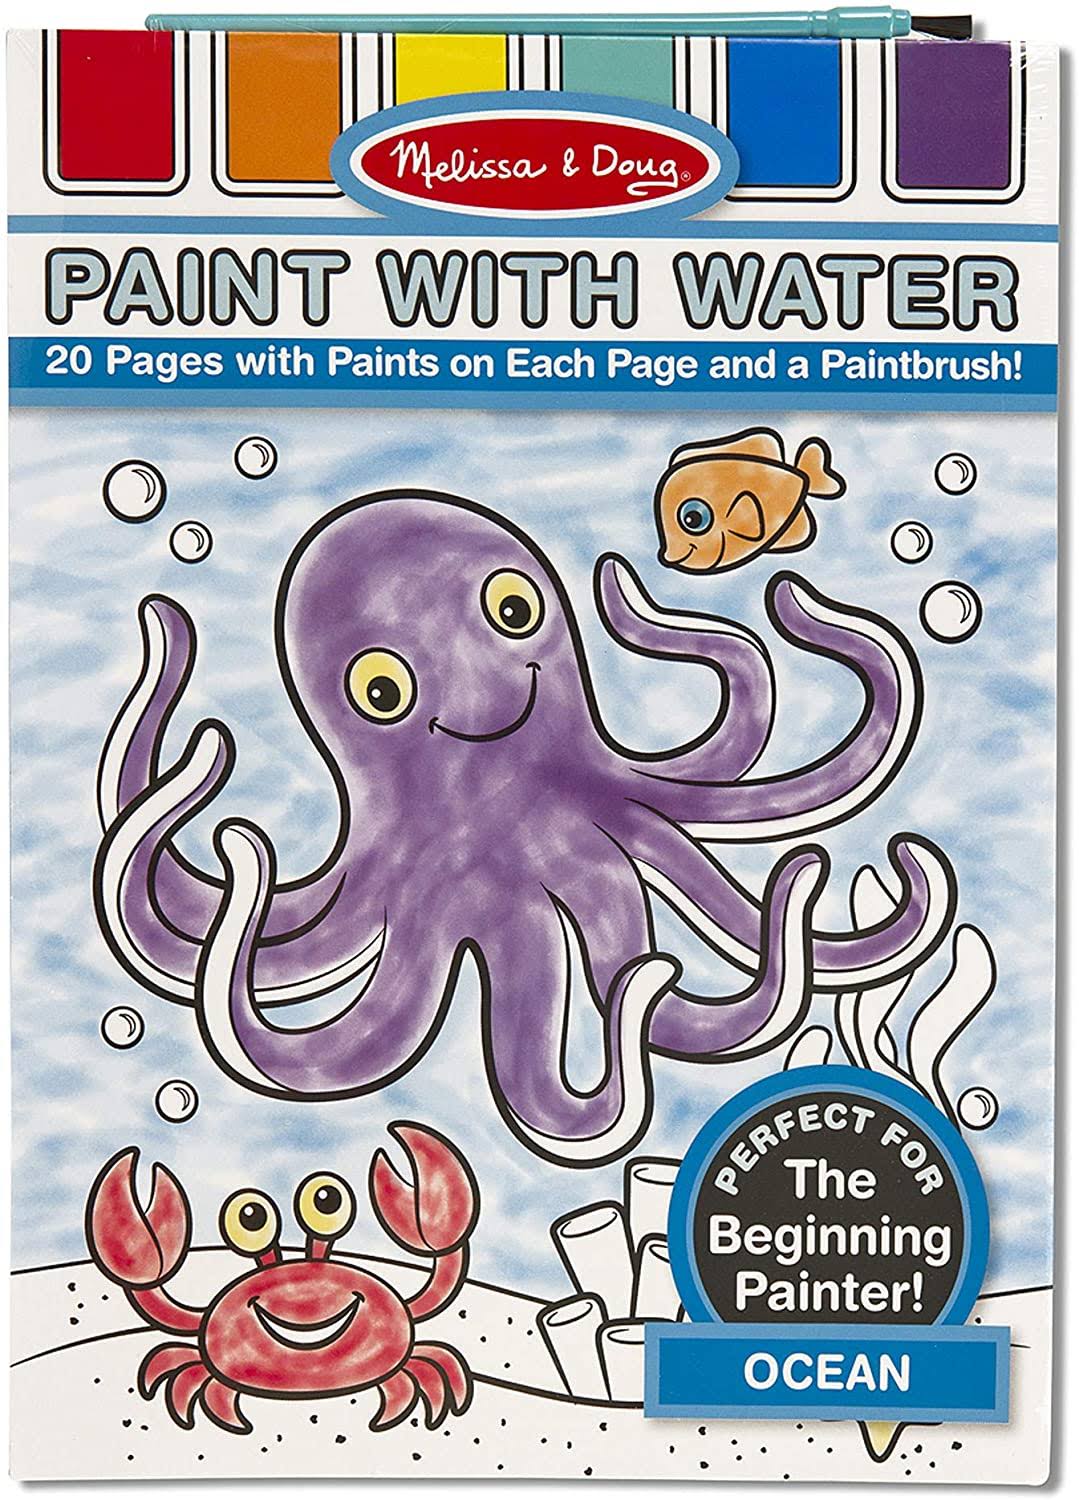 Melissa & Doug Paint with Water Set - Ocean